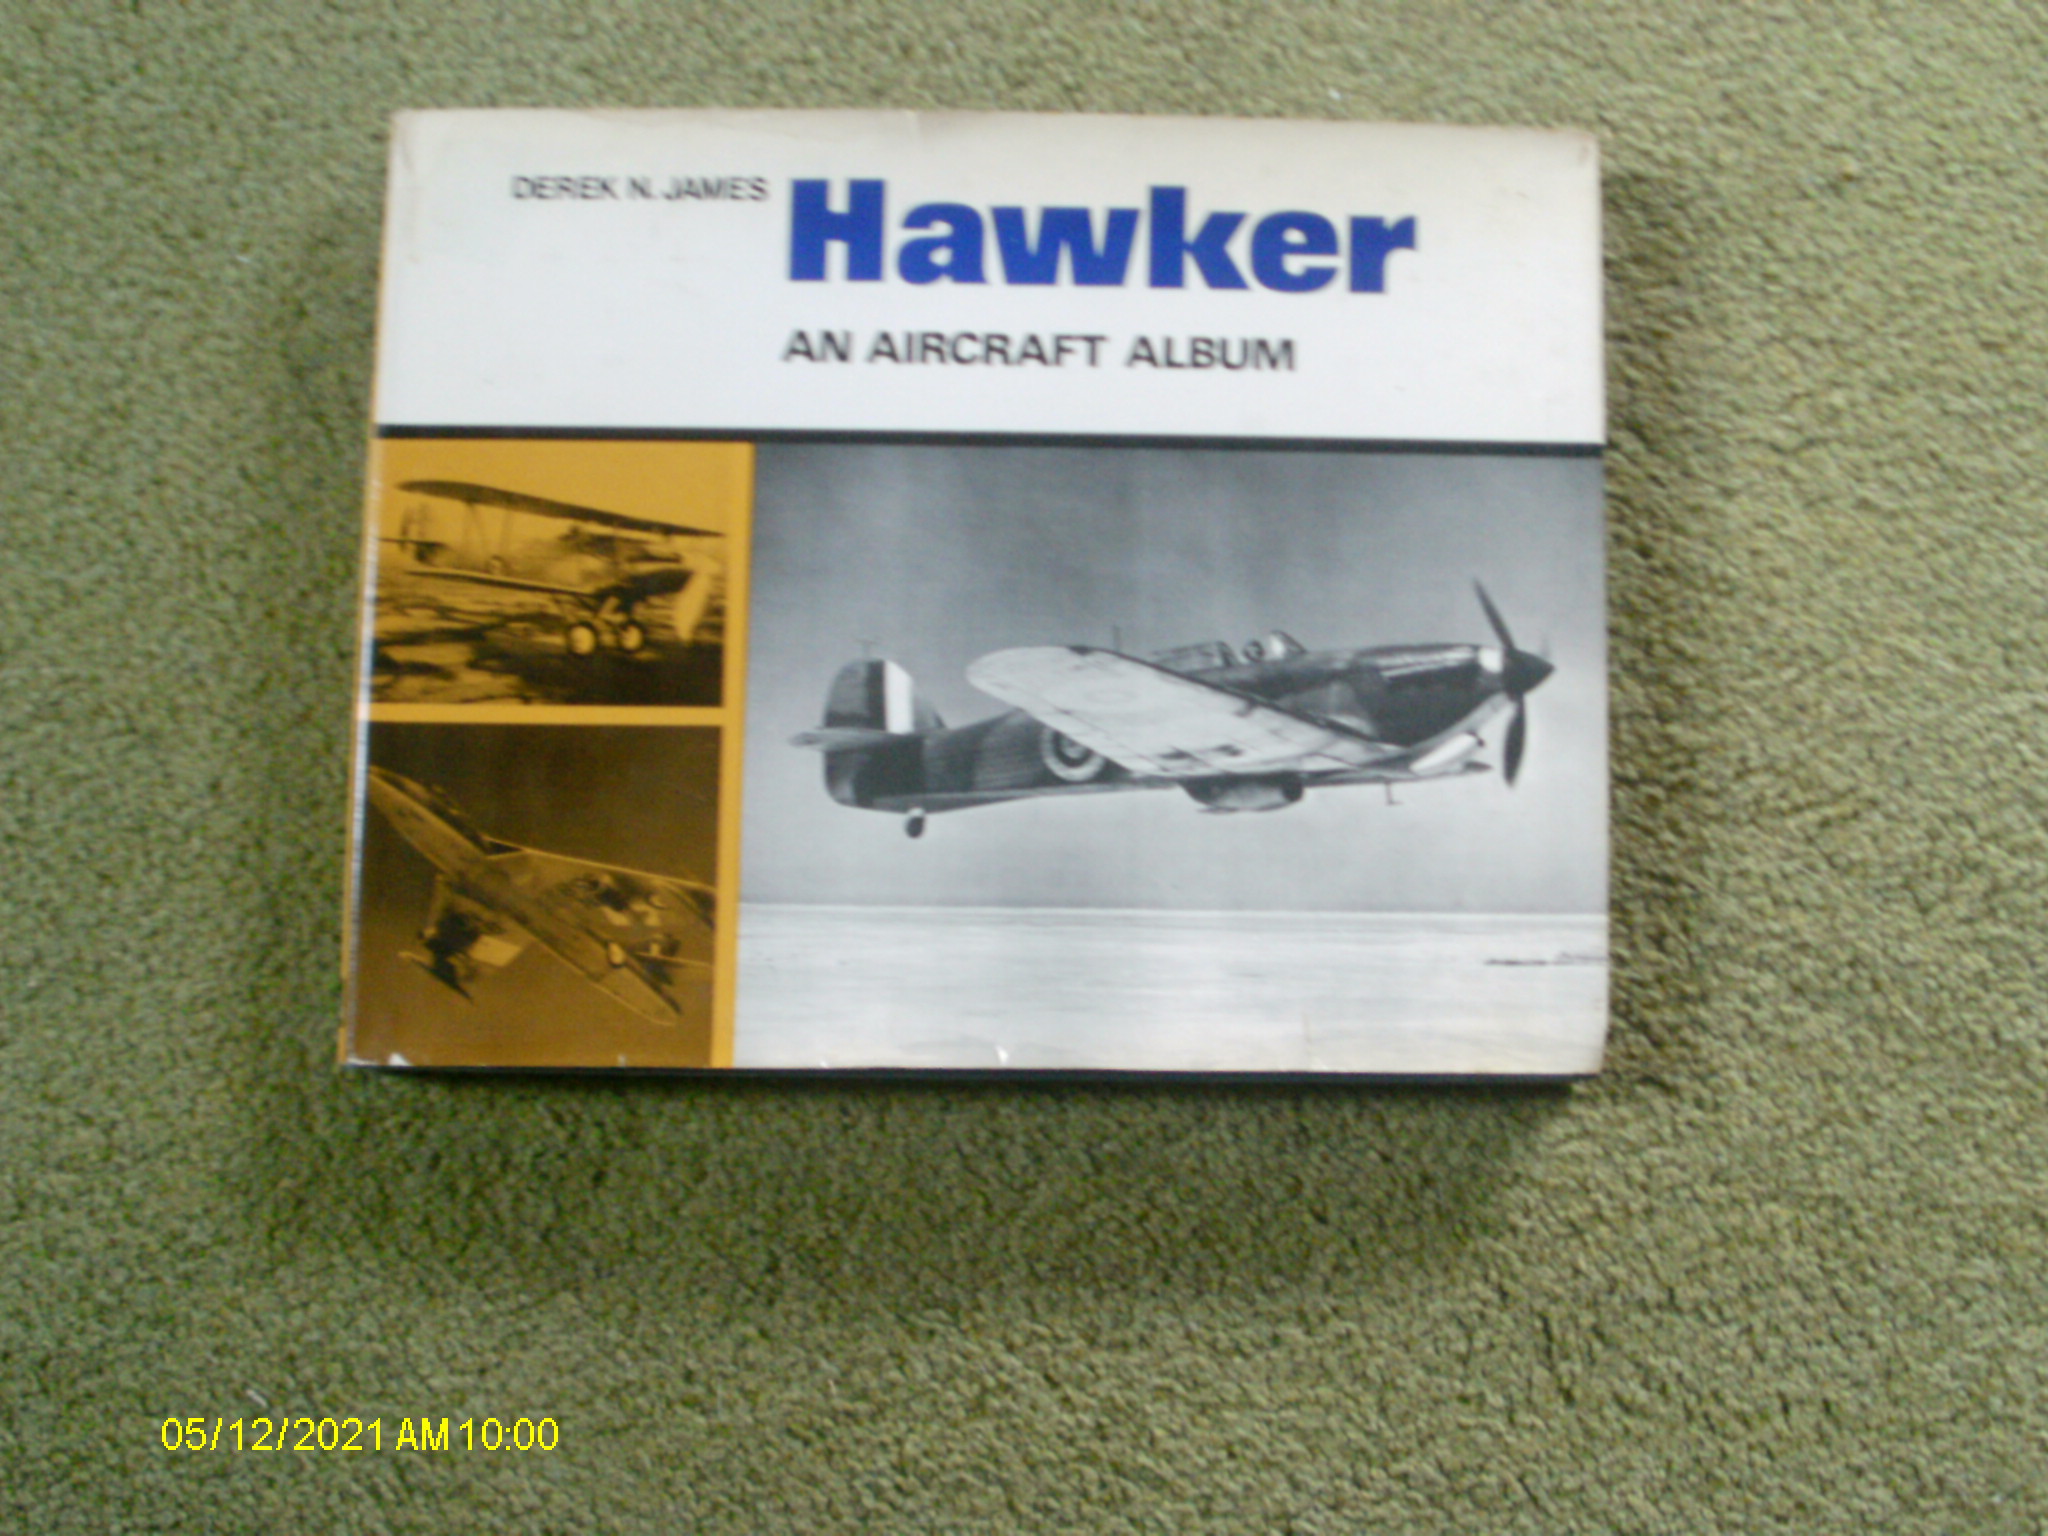 Hawker: An aircraft album - James, Derek N